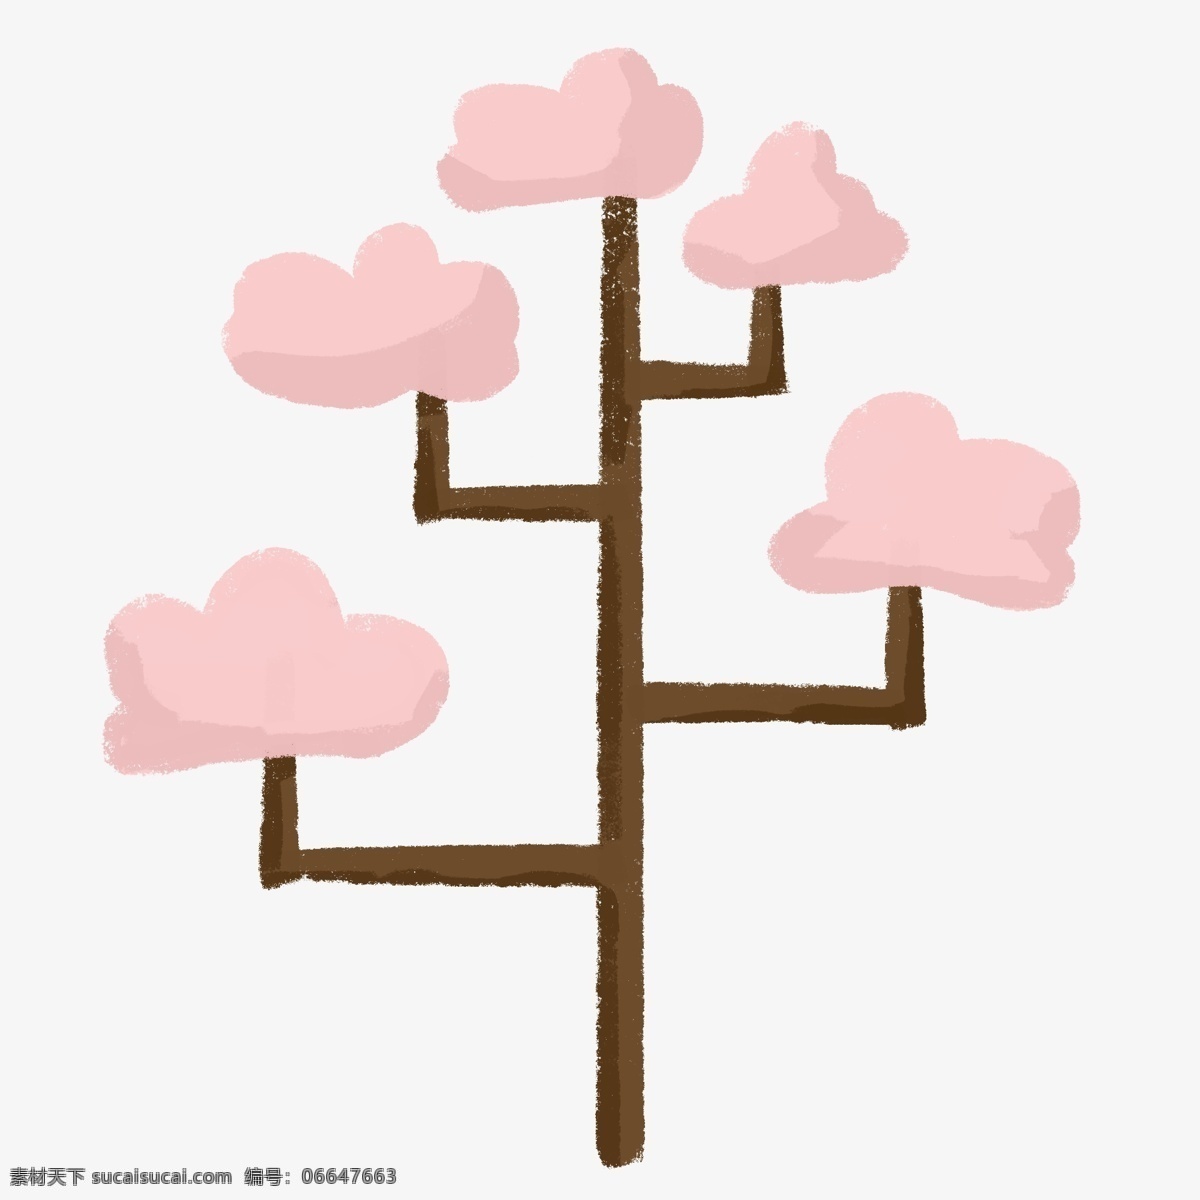 简约 粉色 小树 插画 海报 免 抠 元素 粉色树叶 几何 棕色 植物 手绘 背景 小清新 森林 夏天